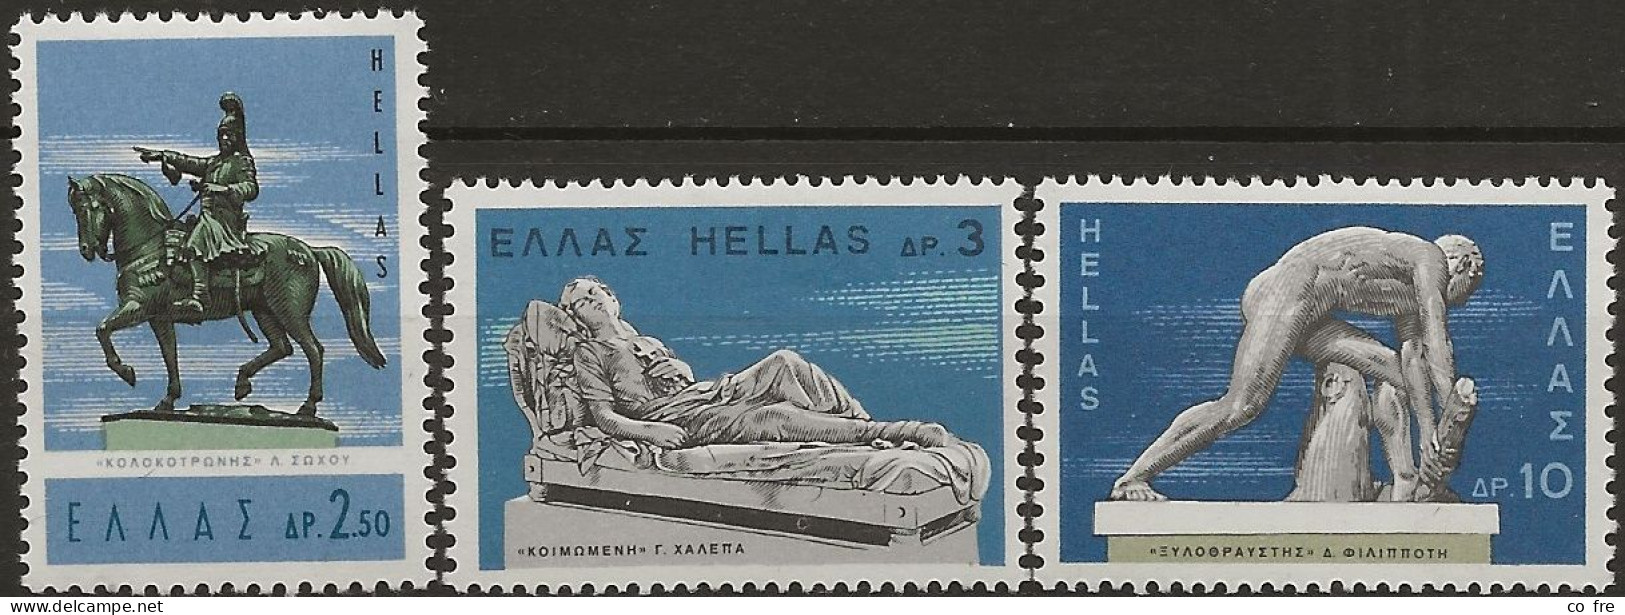 Grêce N°914/20* La Série Complète (ref.2) - Unused Stamps